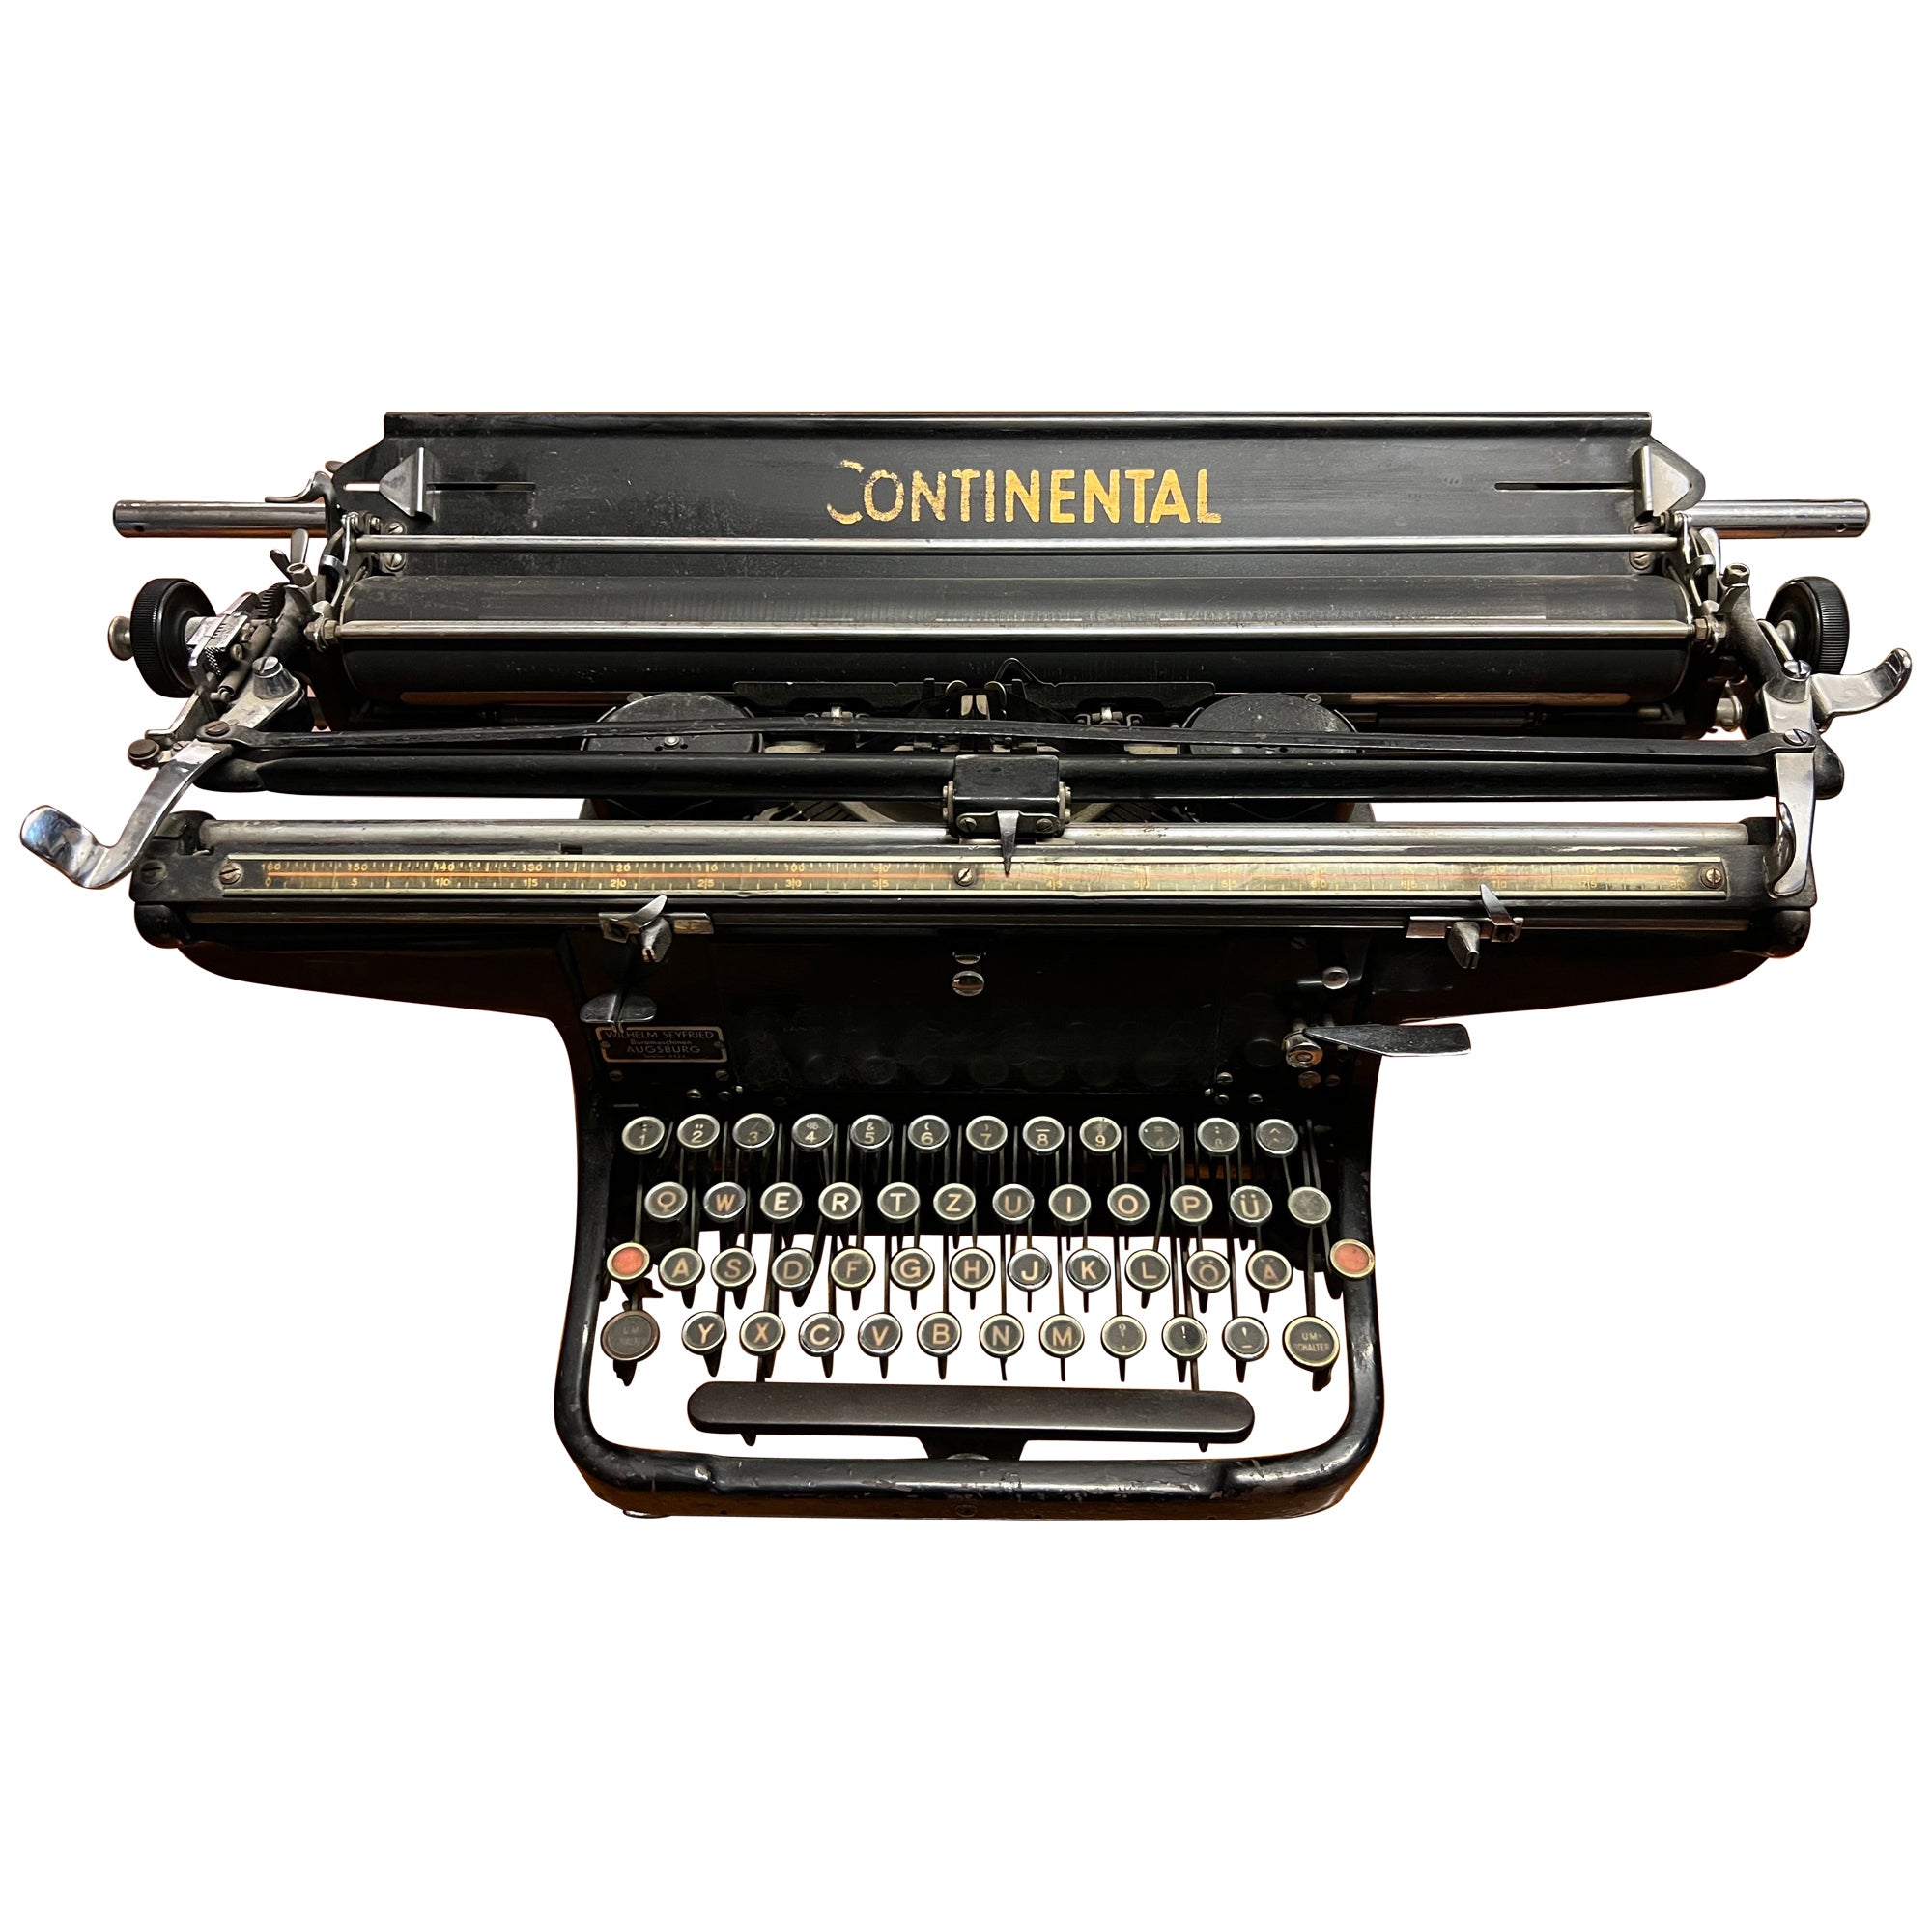 Grande machine à écrire continentale du 20e siècle fabriquée en Allemagne en vente